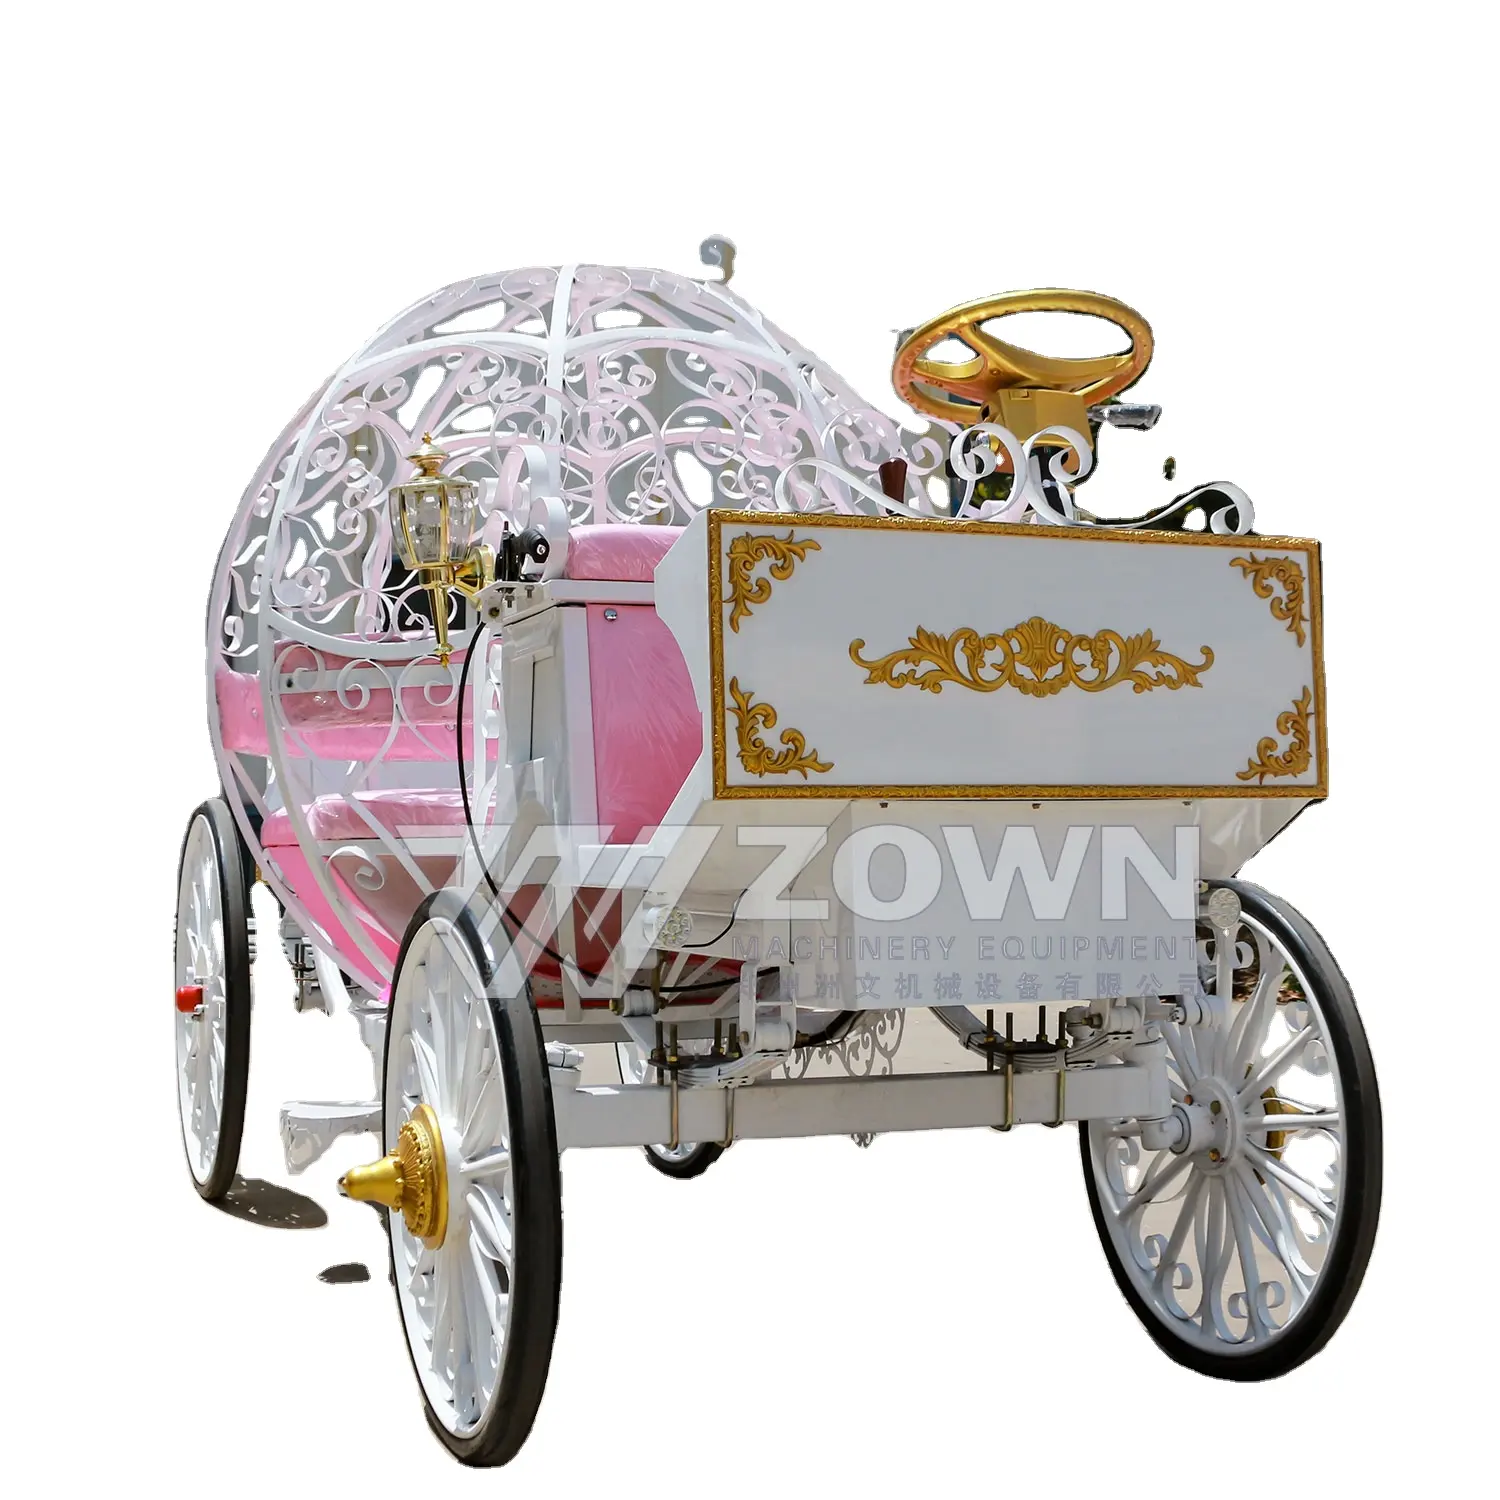 Külkedisi kraliyet düğün kabak küçük elektrikli gezi arabası üreticisi toptan satış